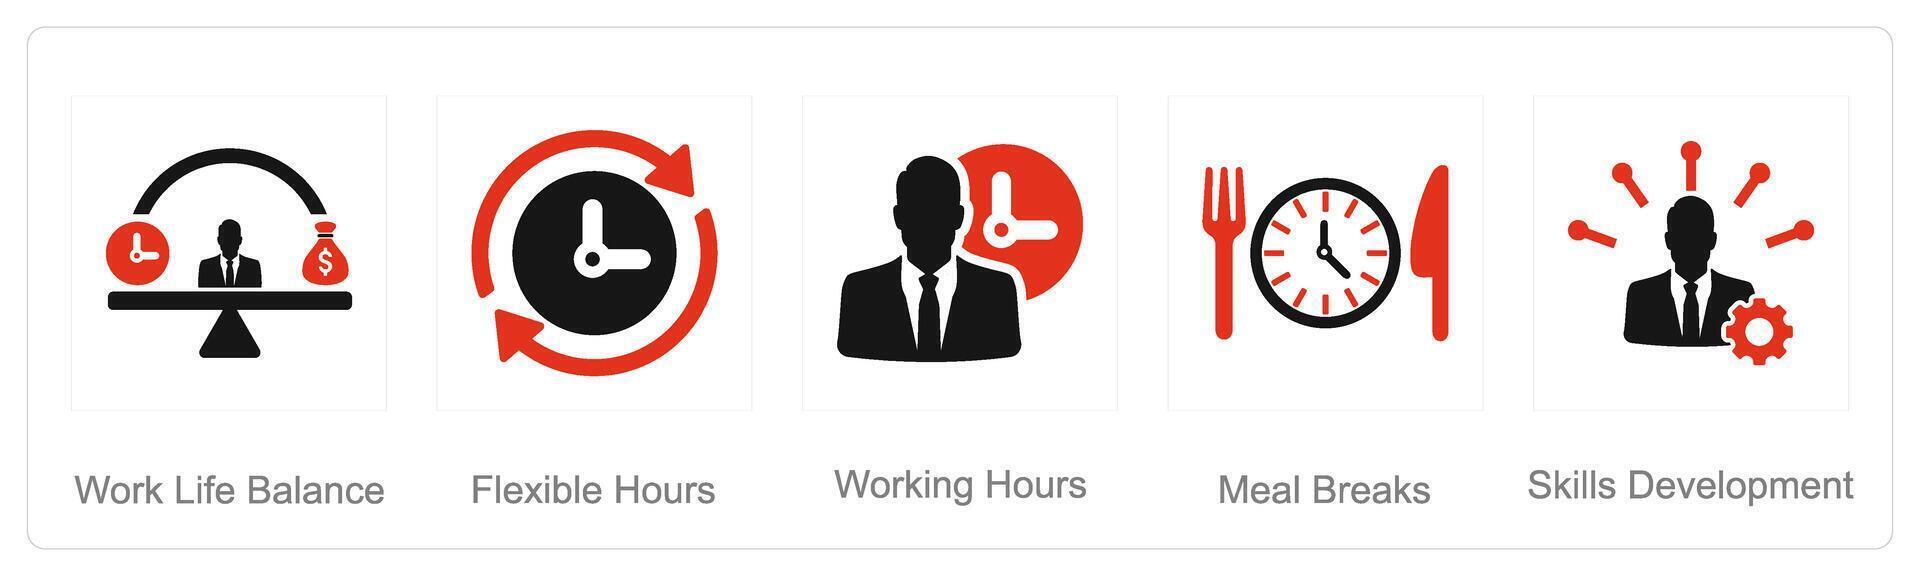 een reeks van 5 werknemer voordelen pictogrammen net zo werk leven evenwicht, flexibel uur, werken uren vector